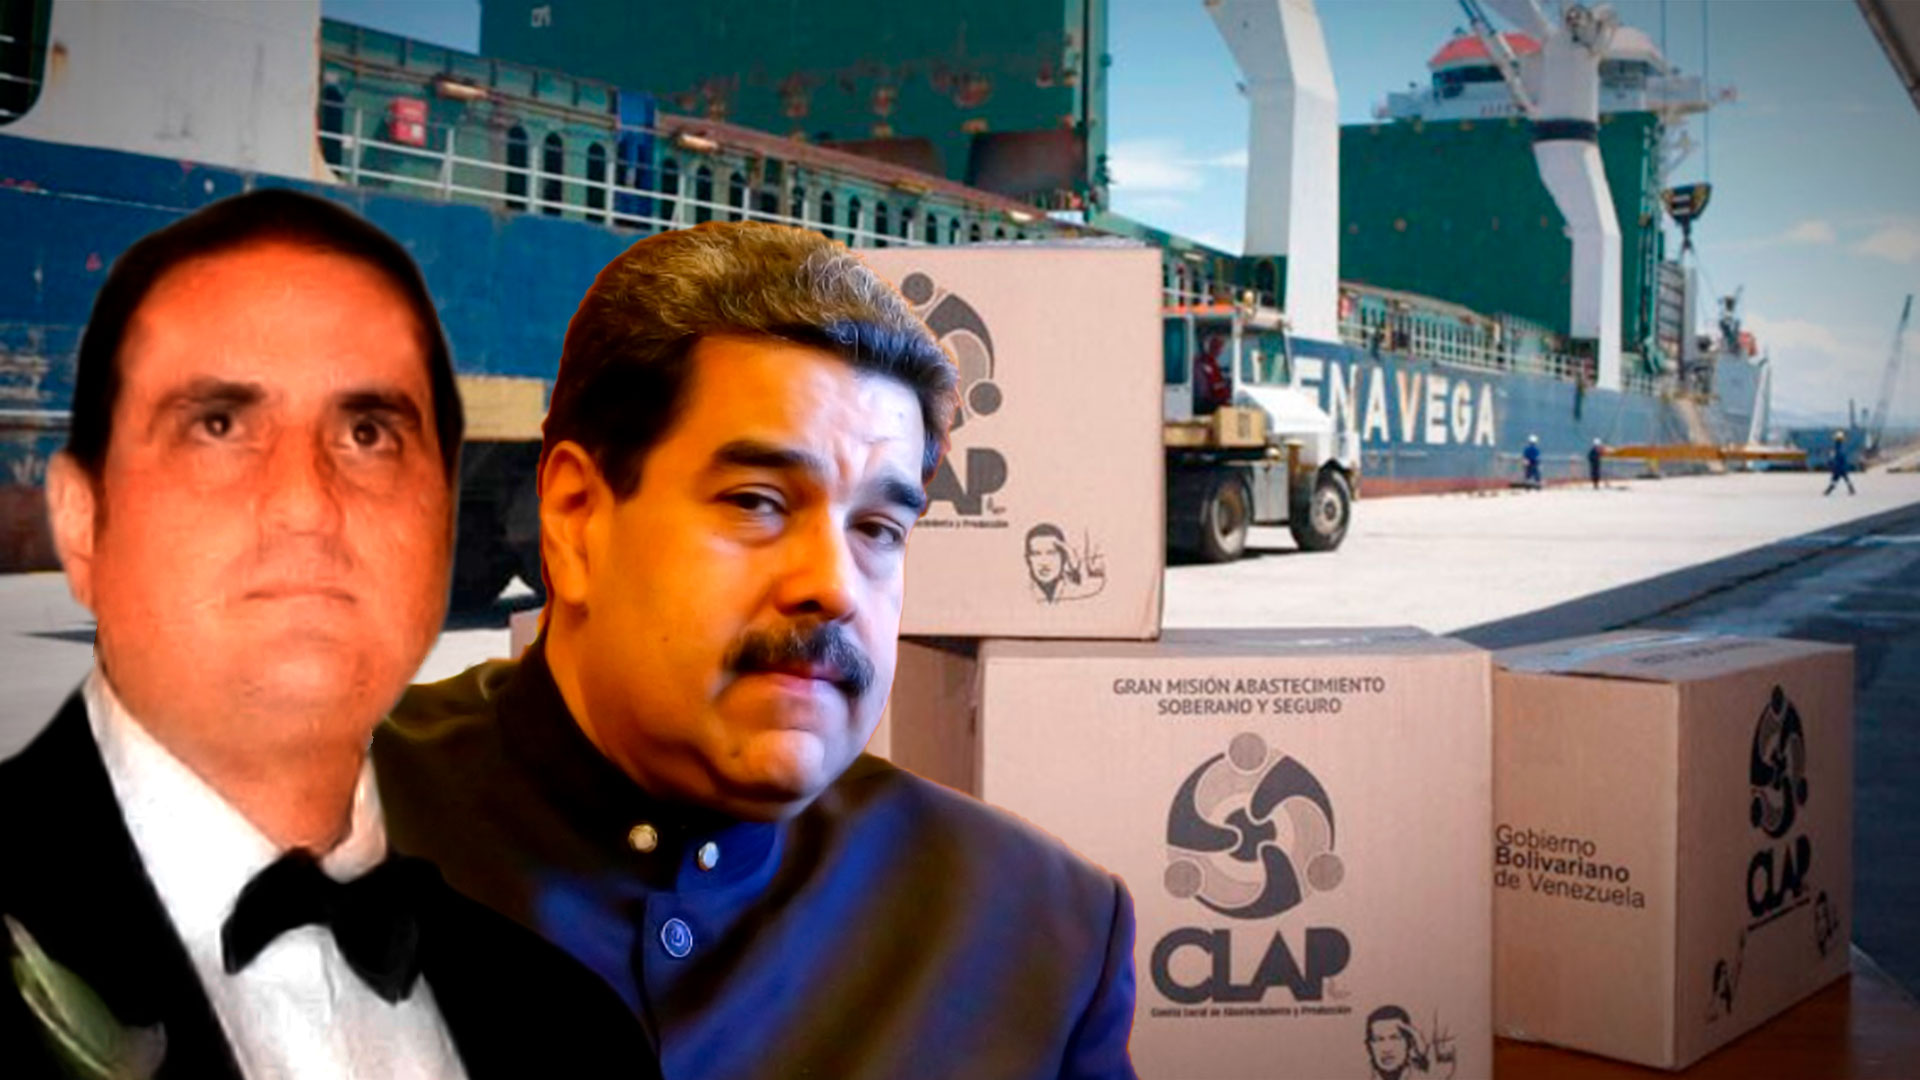 Alex Saab, Nicolás Maduro y las cajas CLAP